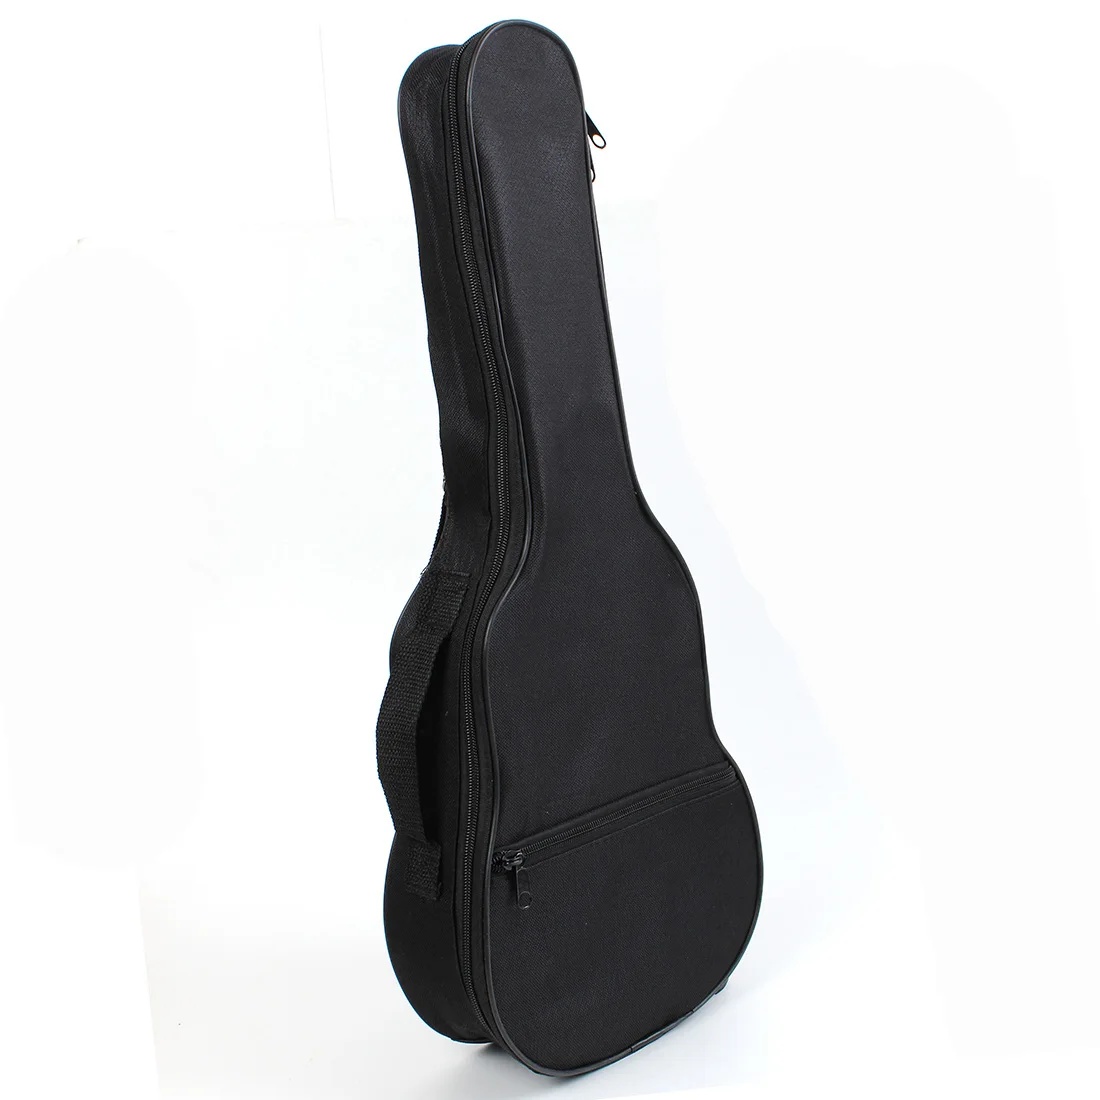 Мягкая Наплечная Сумка для переноски с ремнями Гавайская гитара мягкая сумка для гитары чехол для акустической гитары Музыкальные инструменты части для гитары - Цвет: Черный